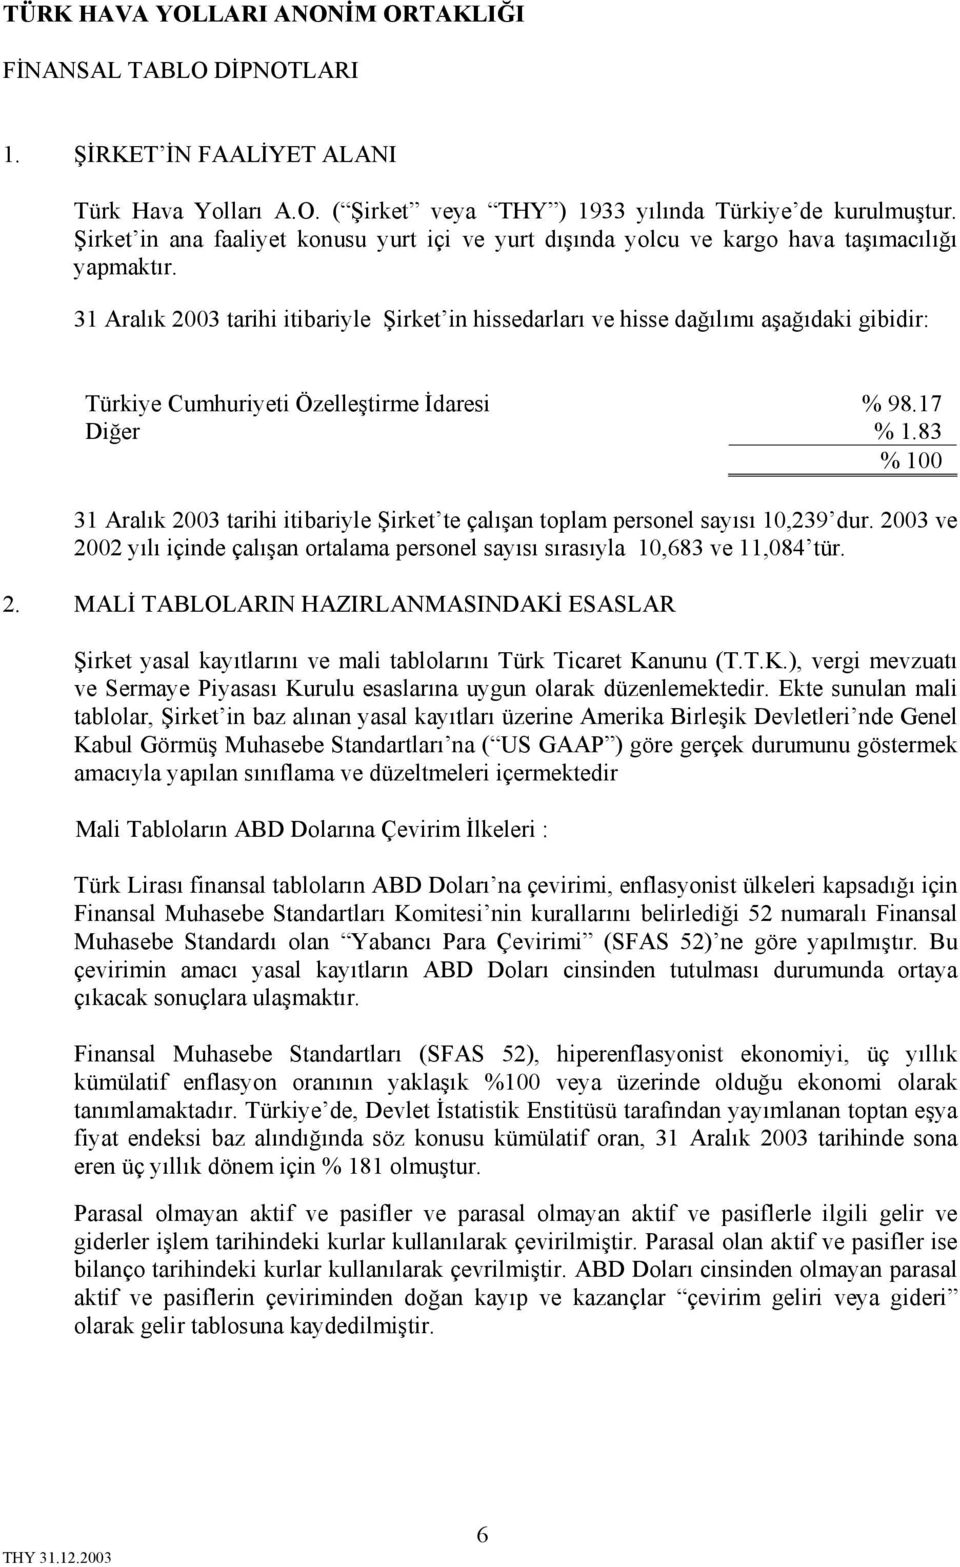 31 Aralık 2003 tarihi itibariyle Şirket in hissedarları ve hisse dağılımı aşağıdaki gibidir: Türkiye Cumhuriyeti Özelleştirme İdaresi % 98.17 Diğer % 1.